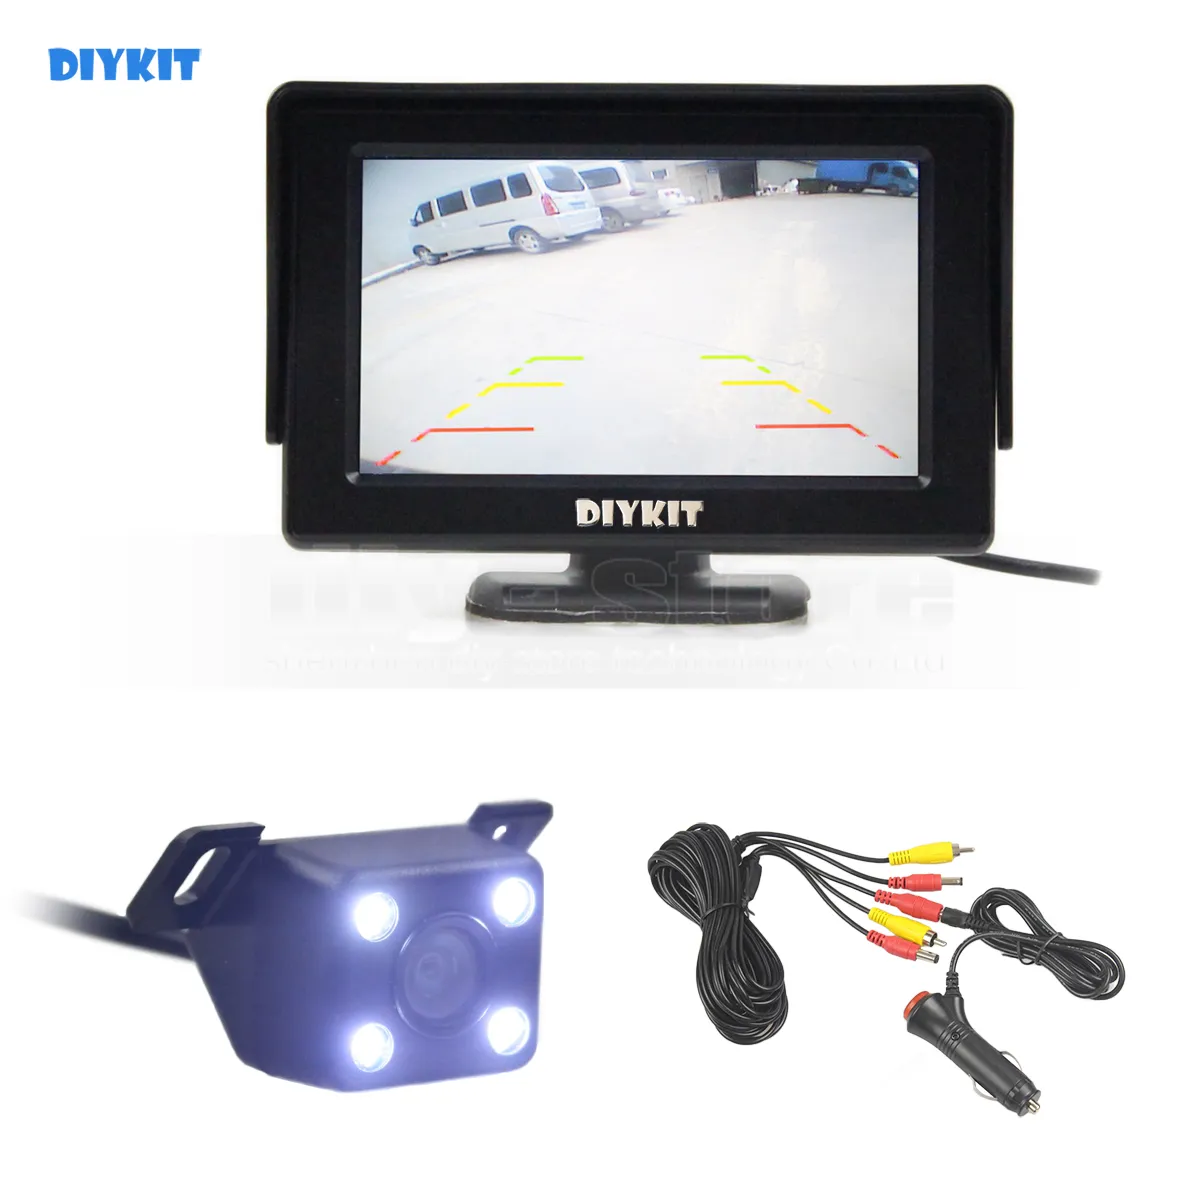 DIYKIT Wlred 4.3 Polegada TFT LCD Monitor Do Carro + Visão Noturna LED Vista Traseira Do Carro Câmera Sistema de Assistência de Estacionamento Ki